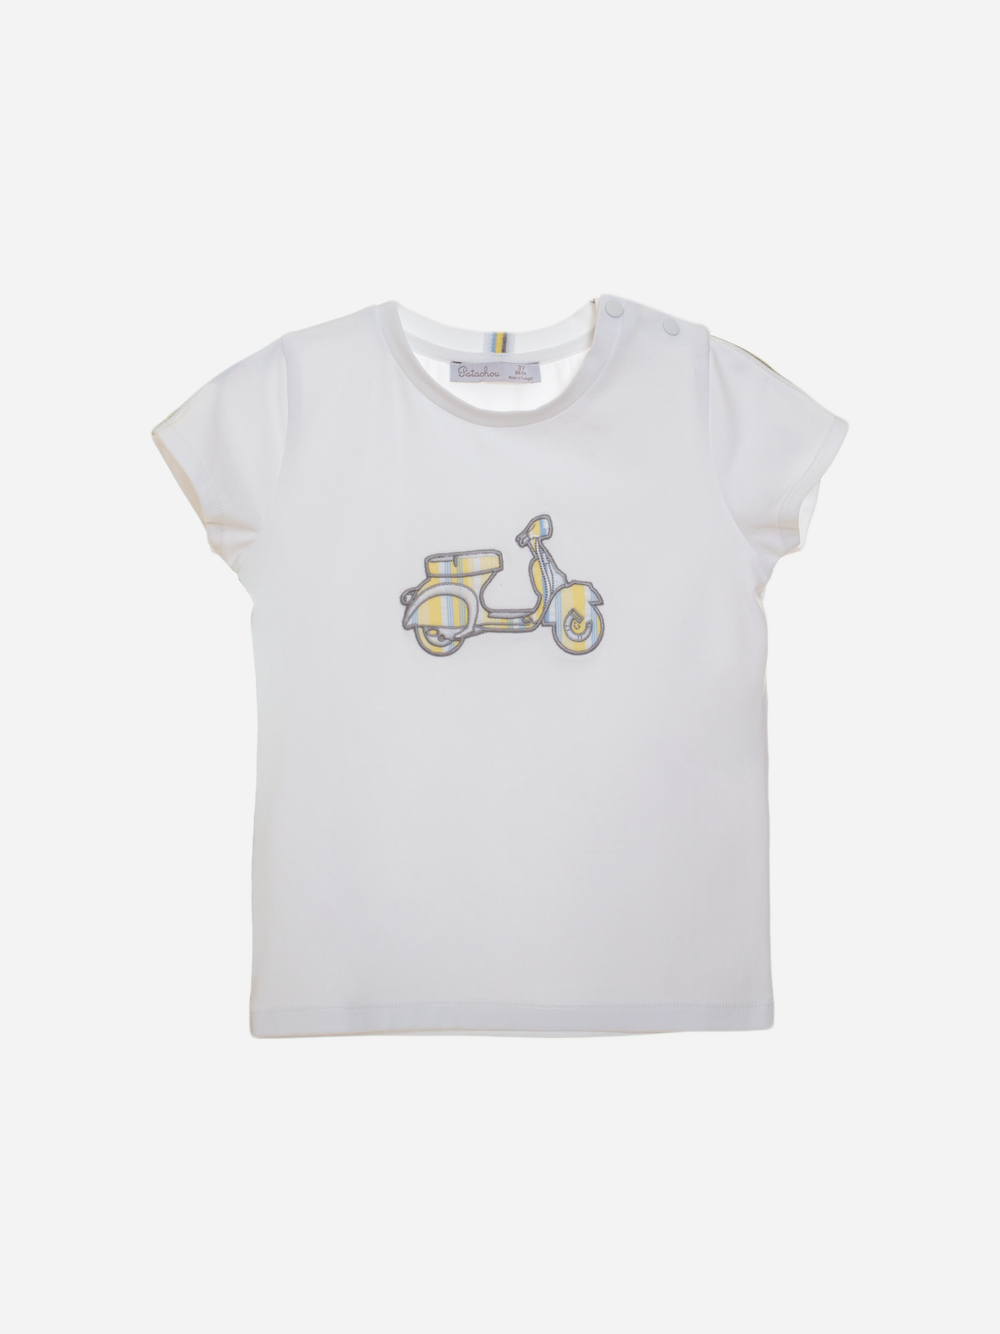 T-shirt branca de menino com bordado de mota